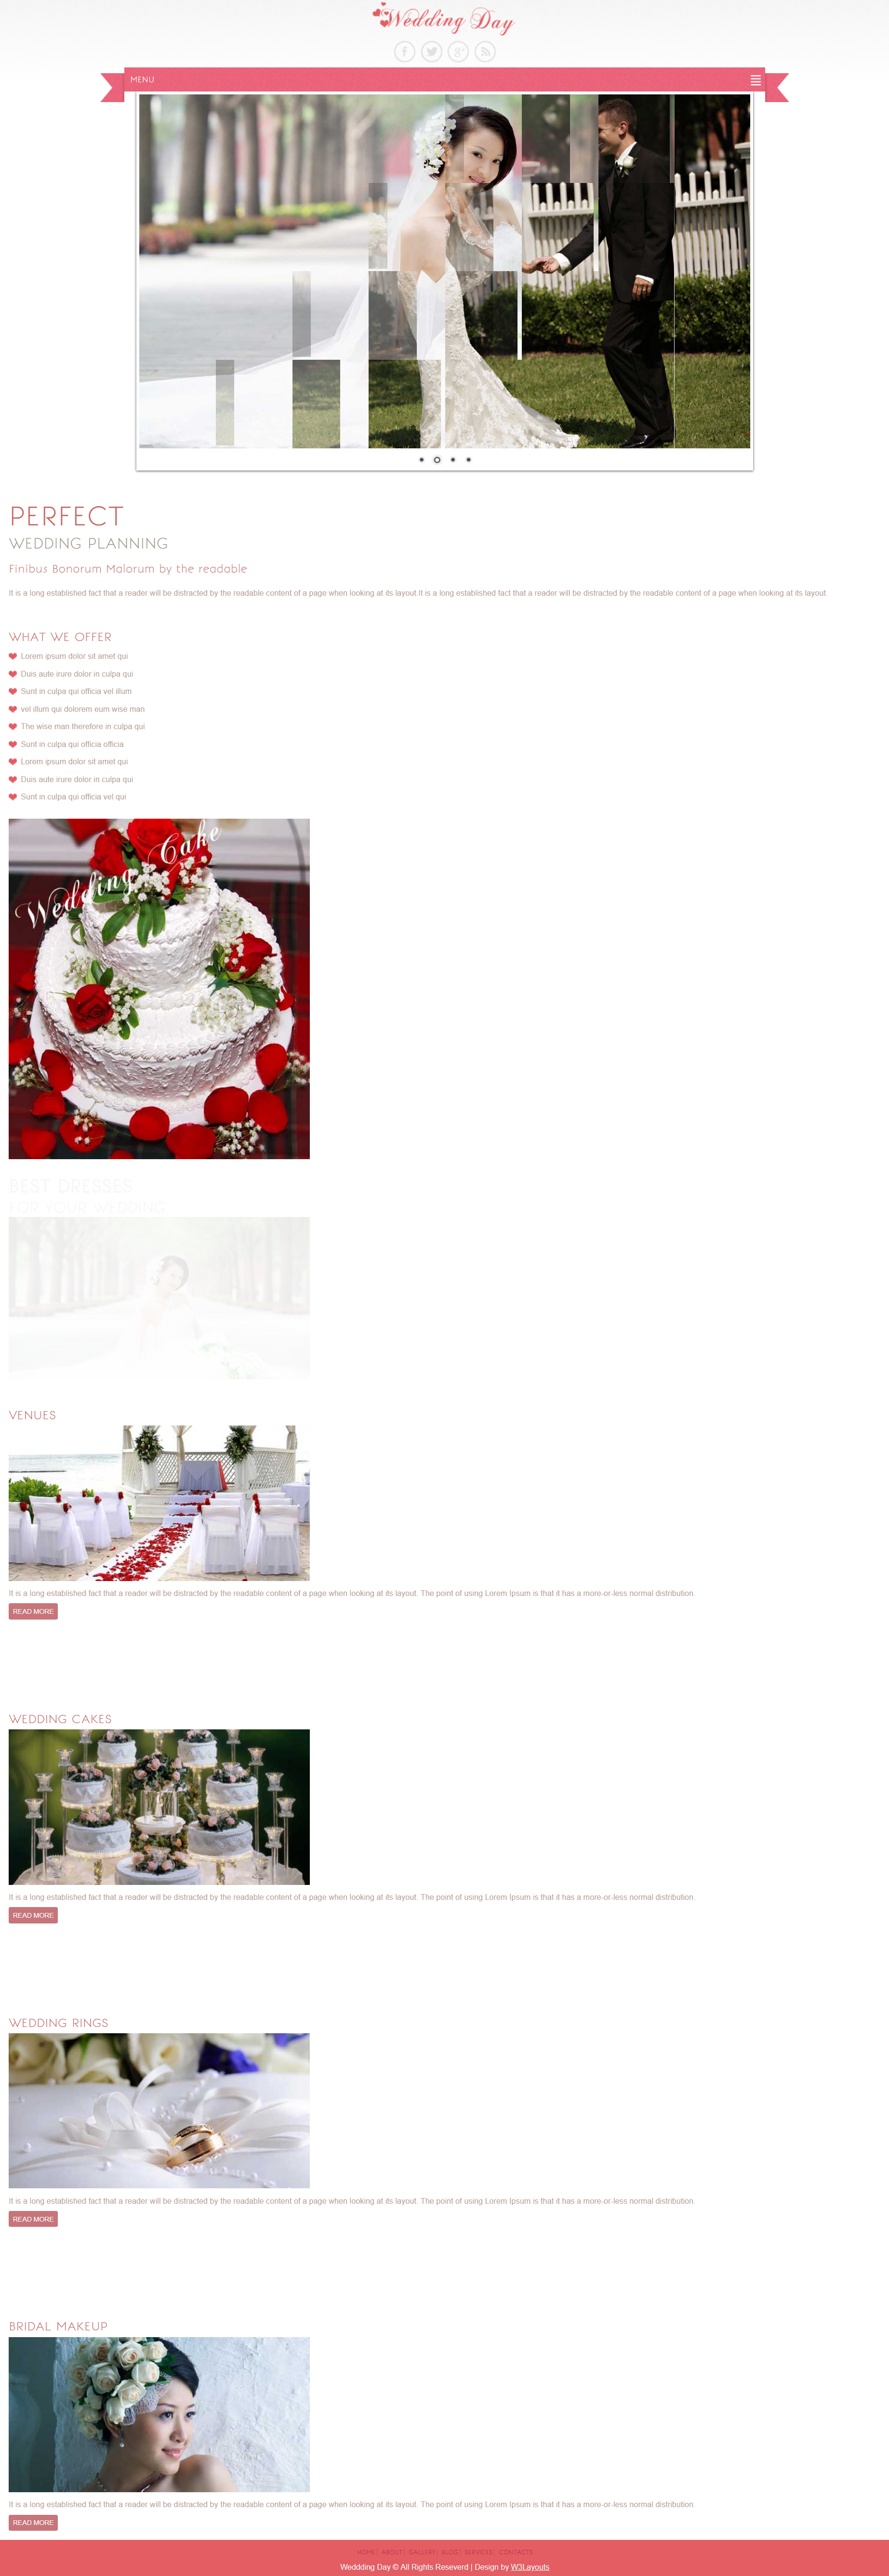 HTML5红色简洁样式甜蜜婚礼策划网页模板代码下载